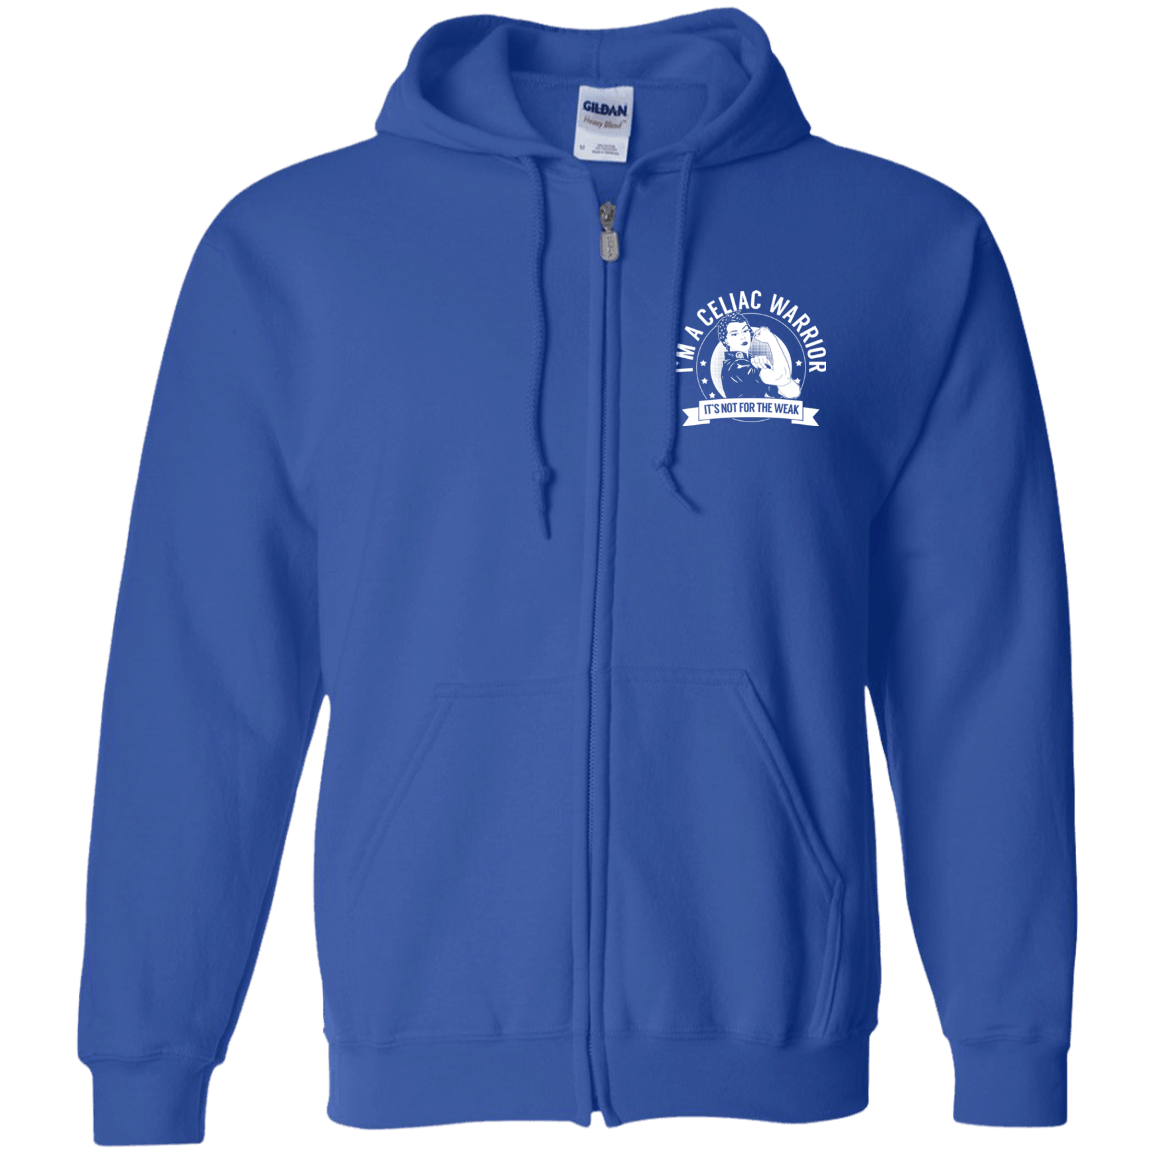 Celiac Warrior NFTW Zip Up Hooded Sweatshirt - The Unchargeables